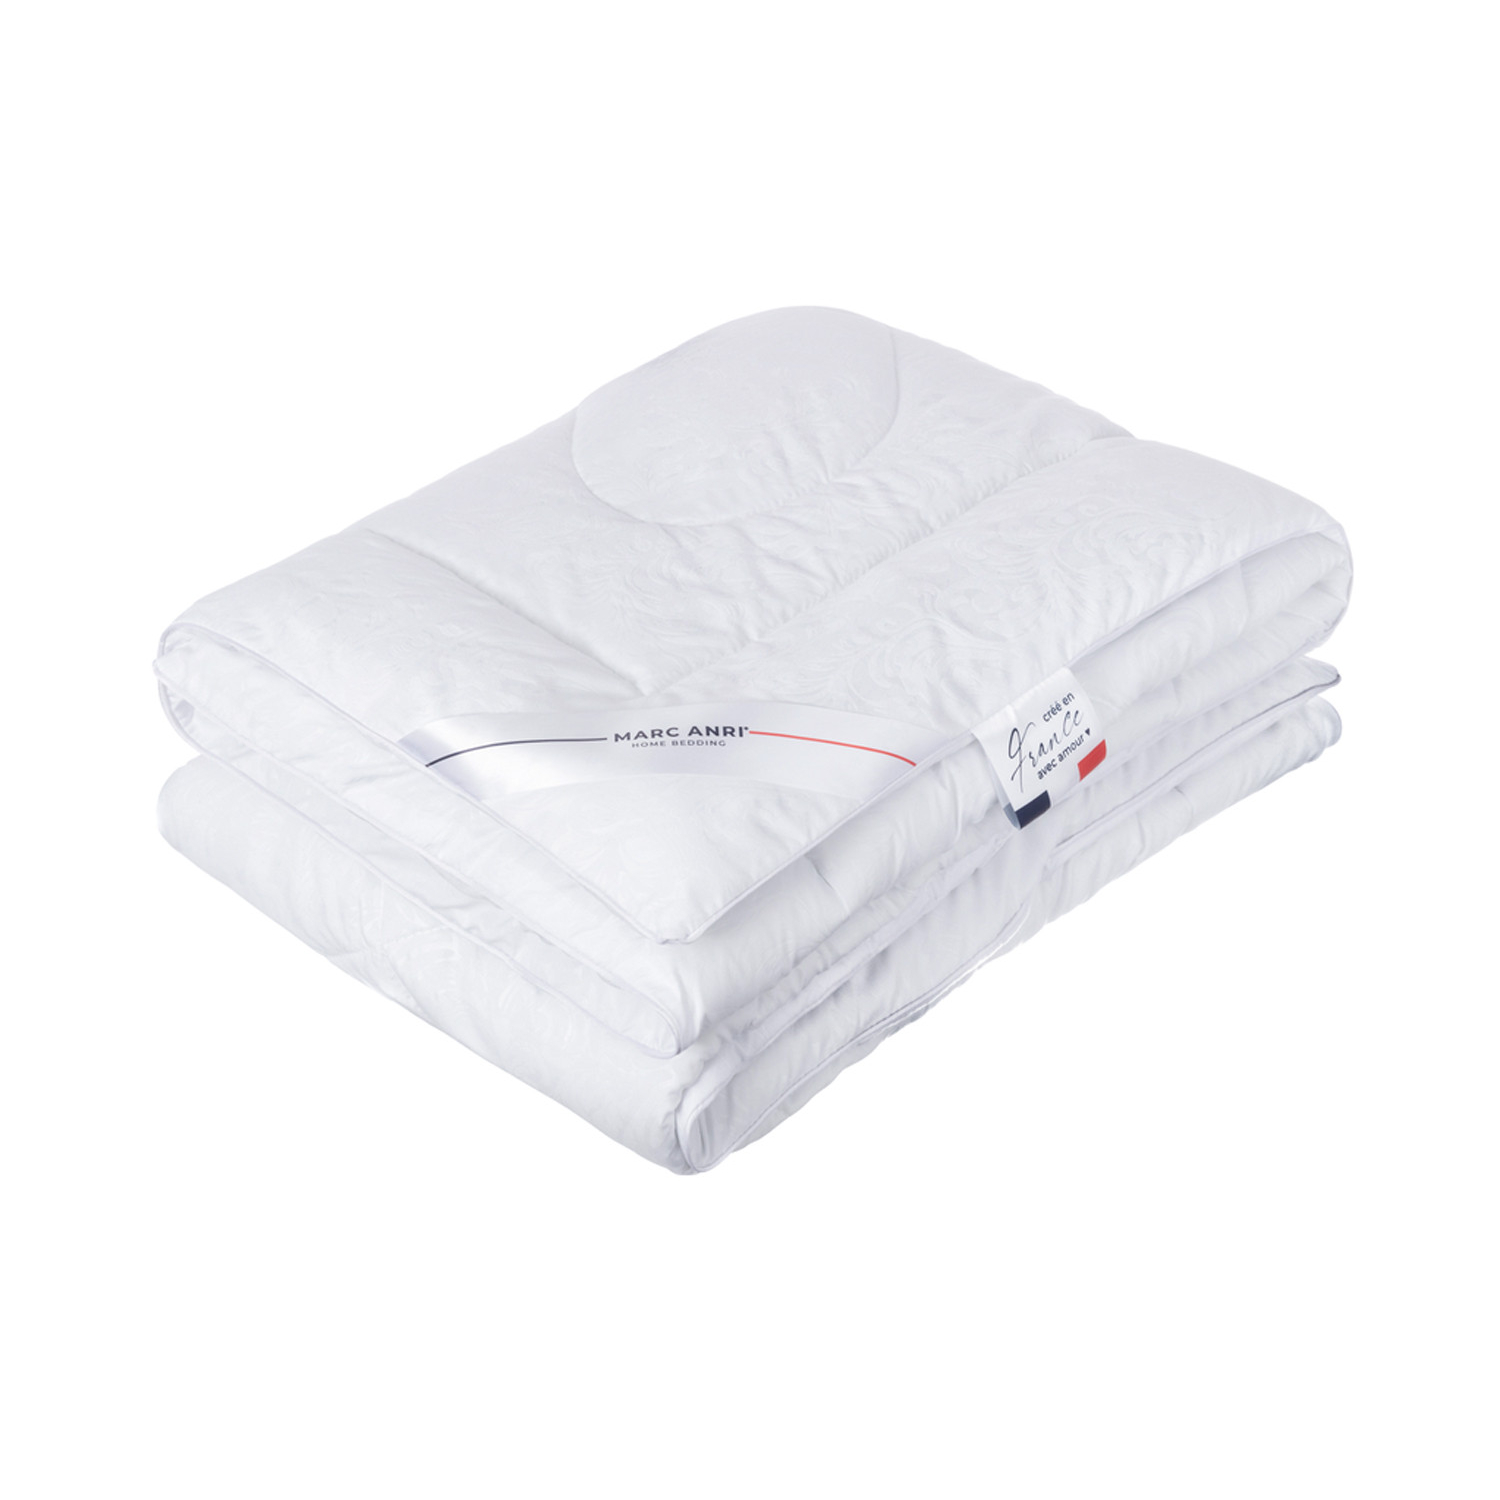 Одеяло Marc Anri Chinon белое 200х220 см (MA-MF) одеяло marc anri chinon белое 140х200 см ma mf